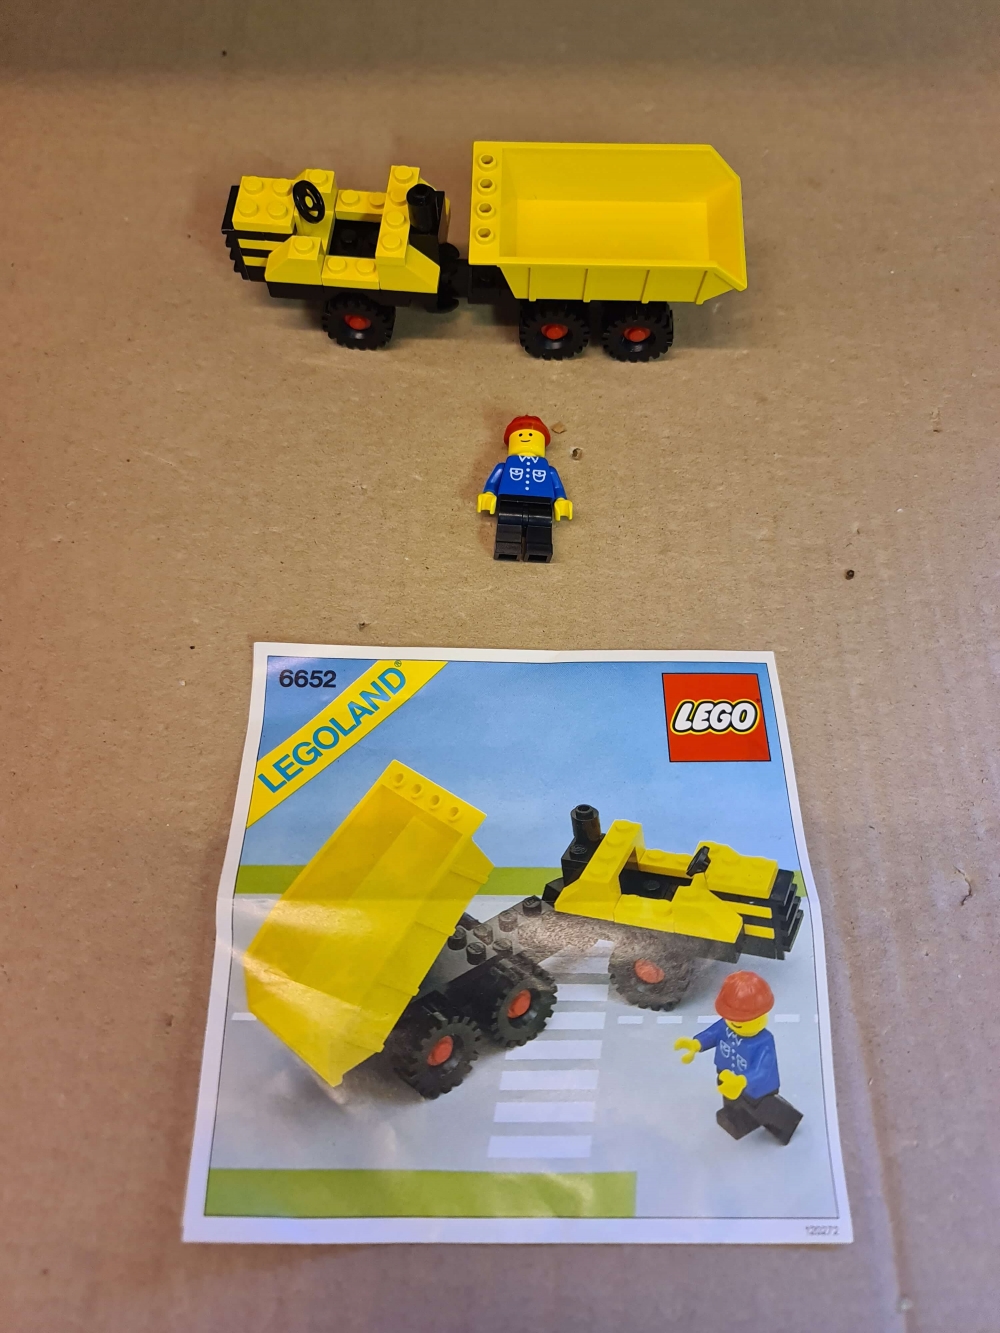 Sett 6652 fra Lego Classic Town serien.

Bortimot mint tilstand. 
Komplett med manual.
